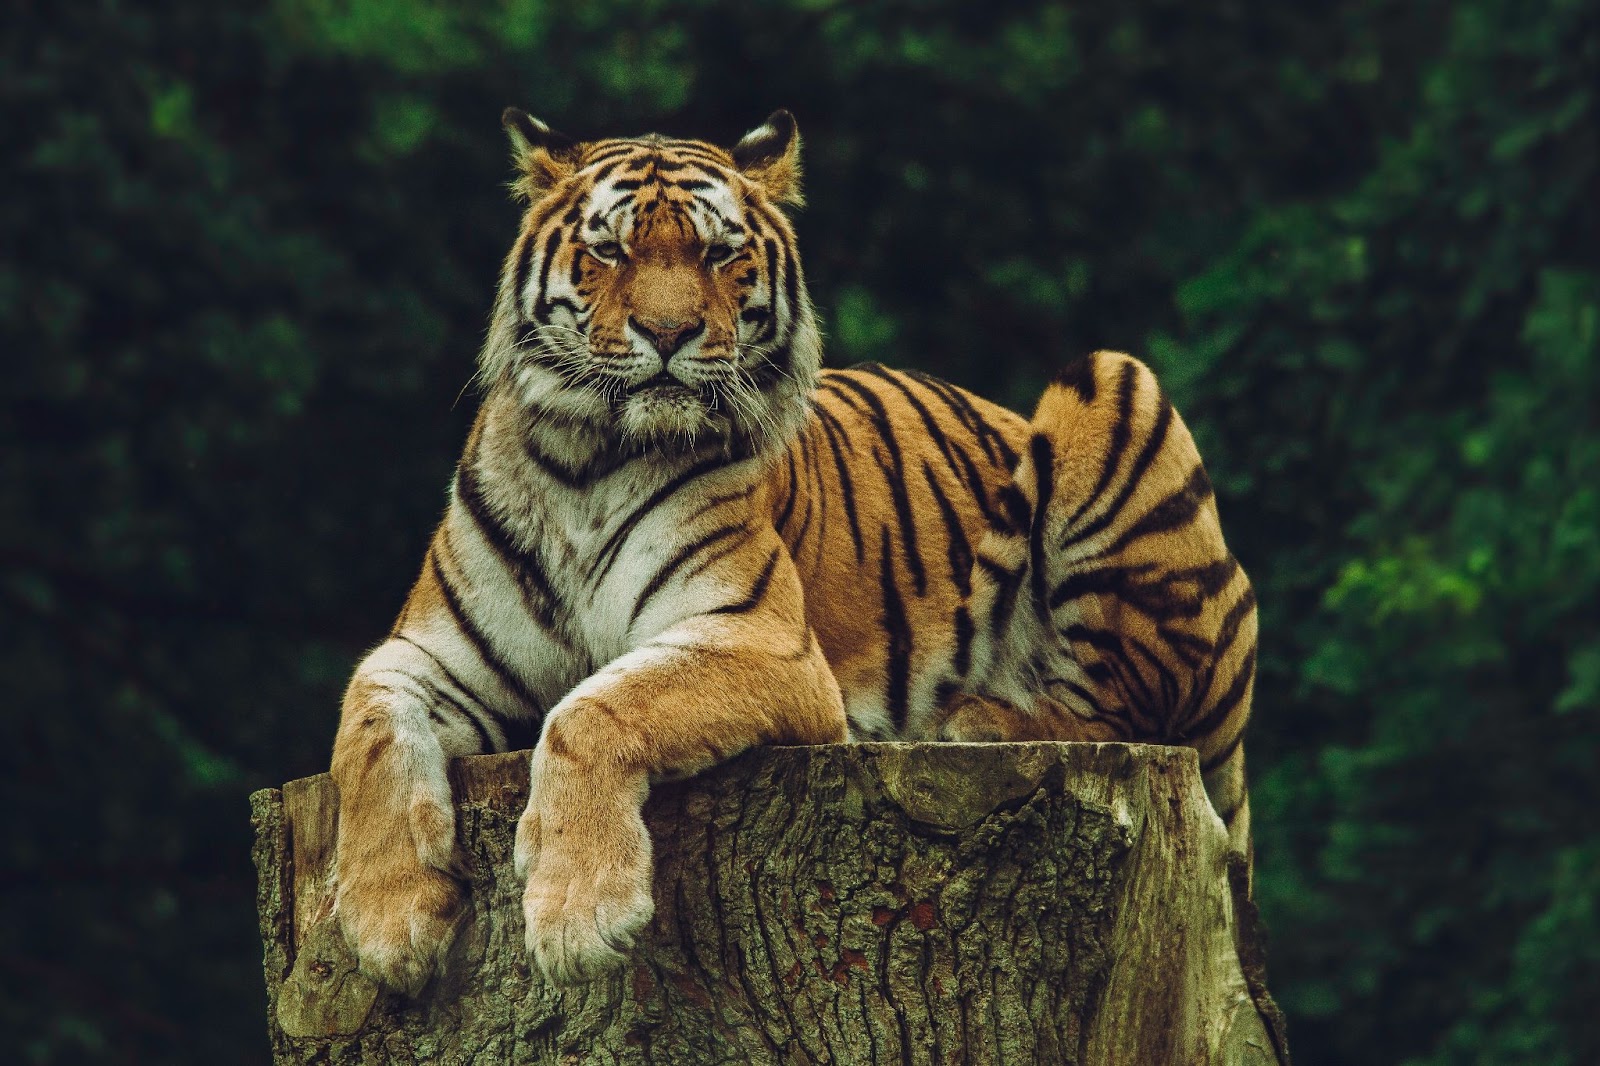 King Tiger 